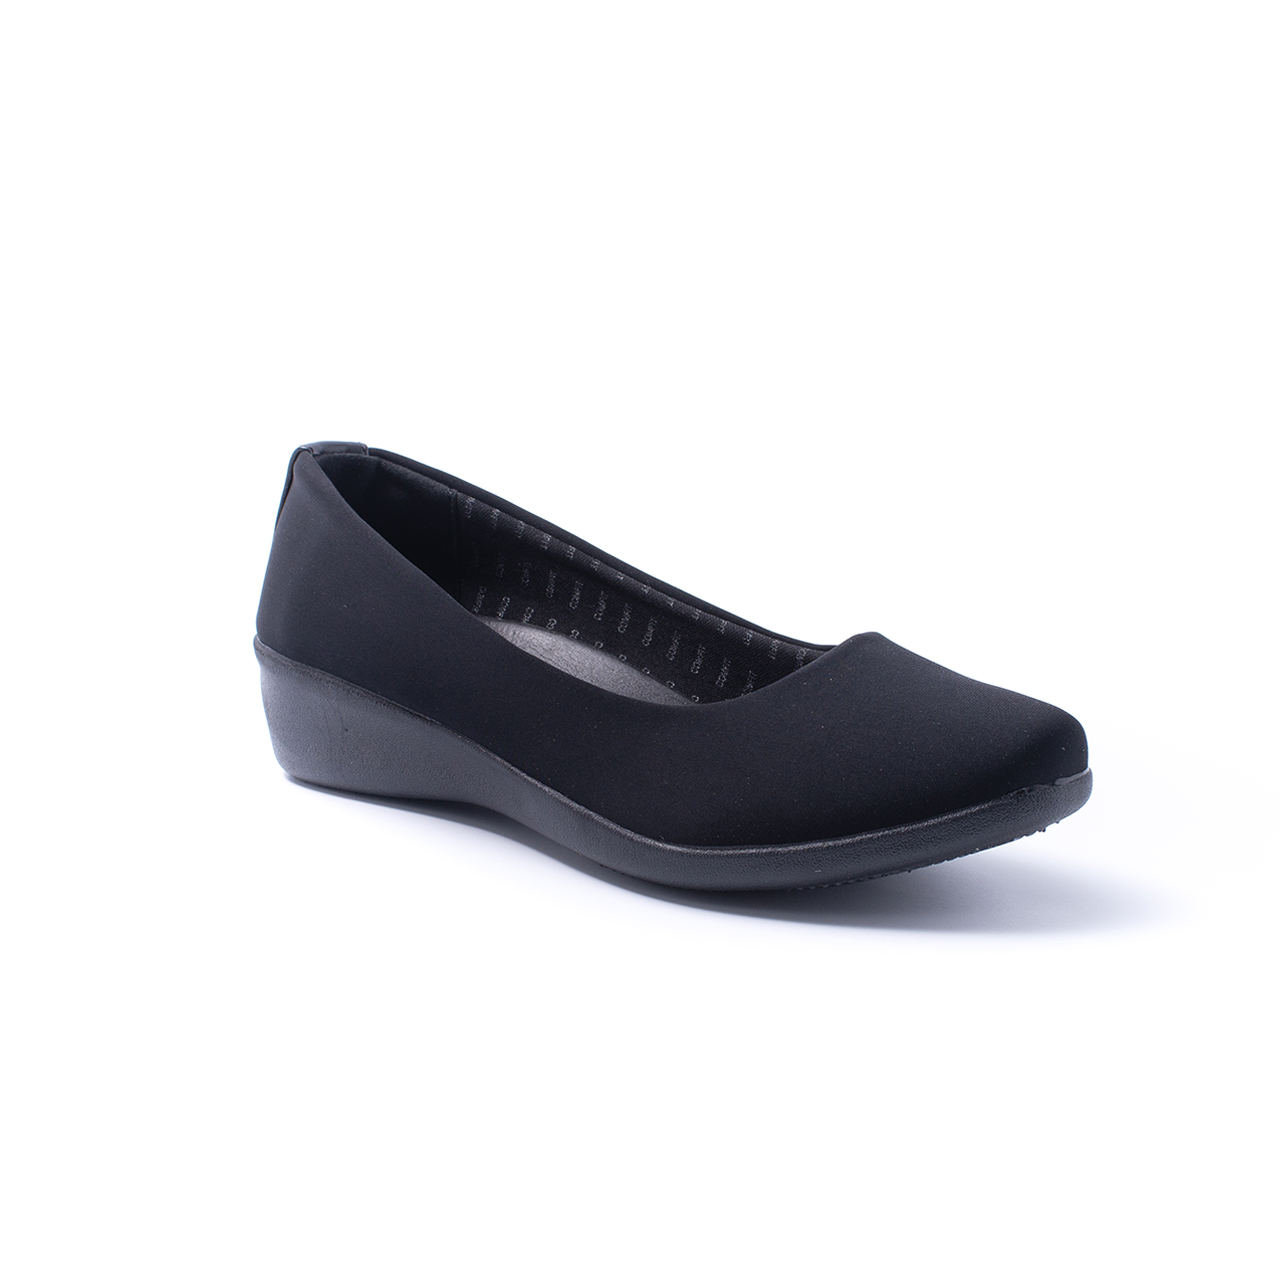 ภาพประกอบของ *Best Seller* Bata Comfit บาจา คอมฟิต รองเท้าเพื่อสุขภาพ รองเท้าคัทชู พื้นนิ่ม น้ำหนักเบา สูง 1 นิ้ว สำหรับผู้หญิง รุ่น Fanny สีดำ 6516571